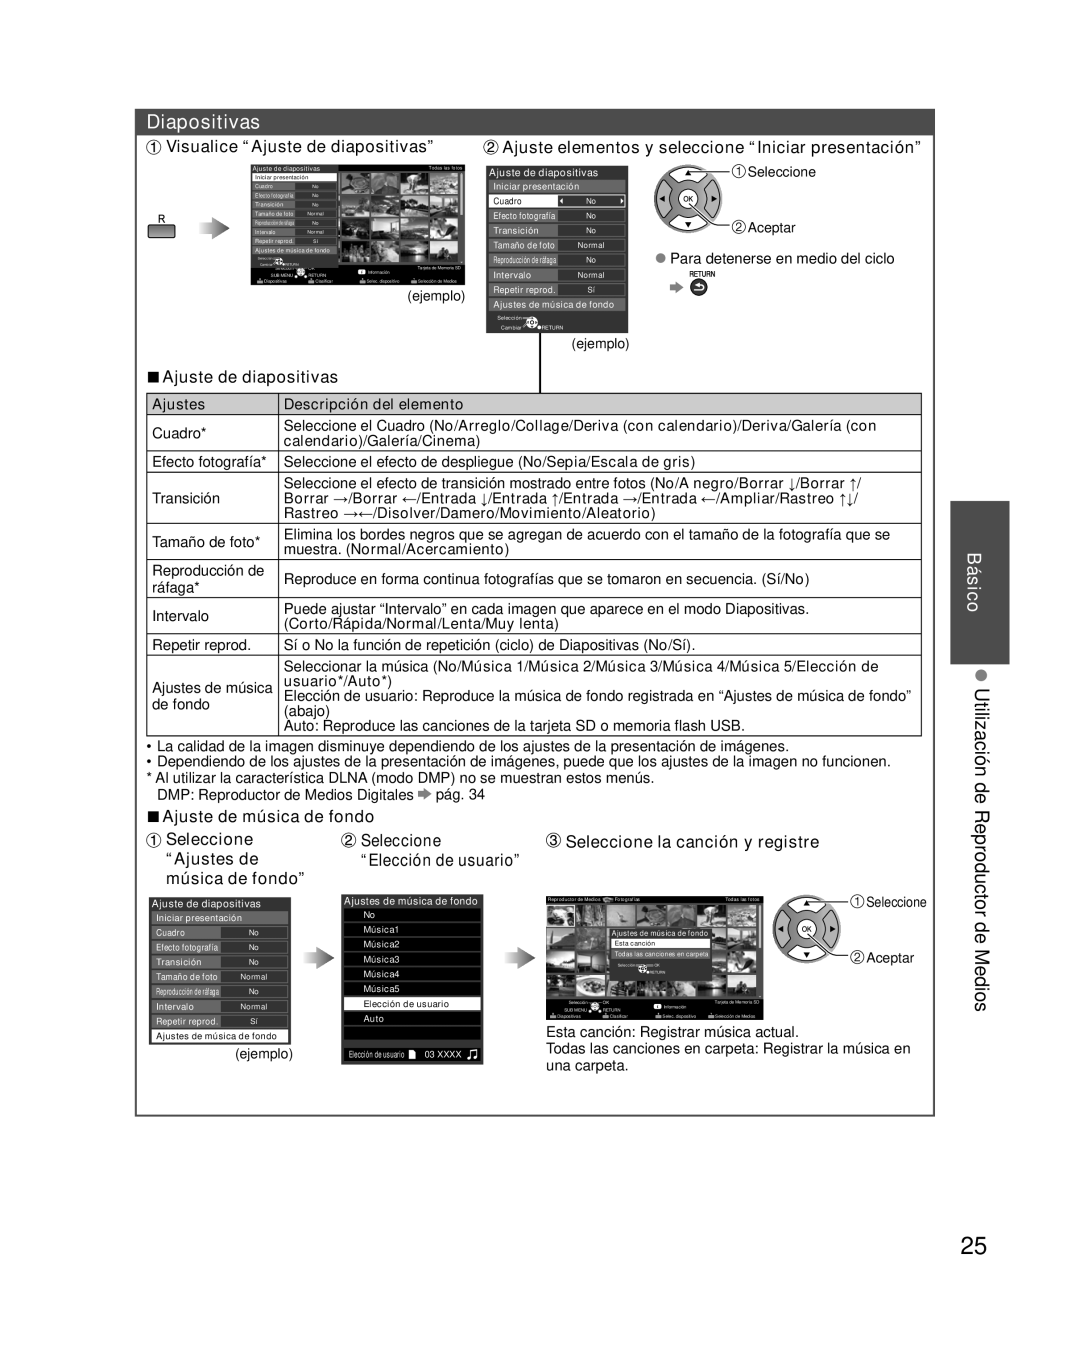 Panasonic TC-L32E3 Diapositivas, Visualice “Ajuste de diapositivas”, Ajuste elementos y seleccione “Iniciar presentación” 